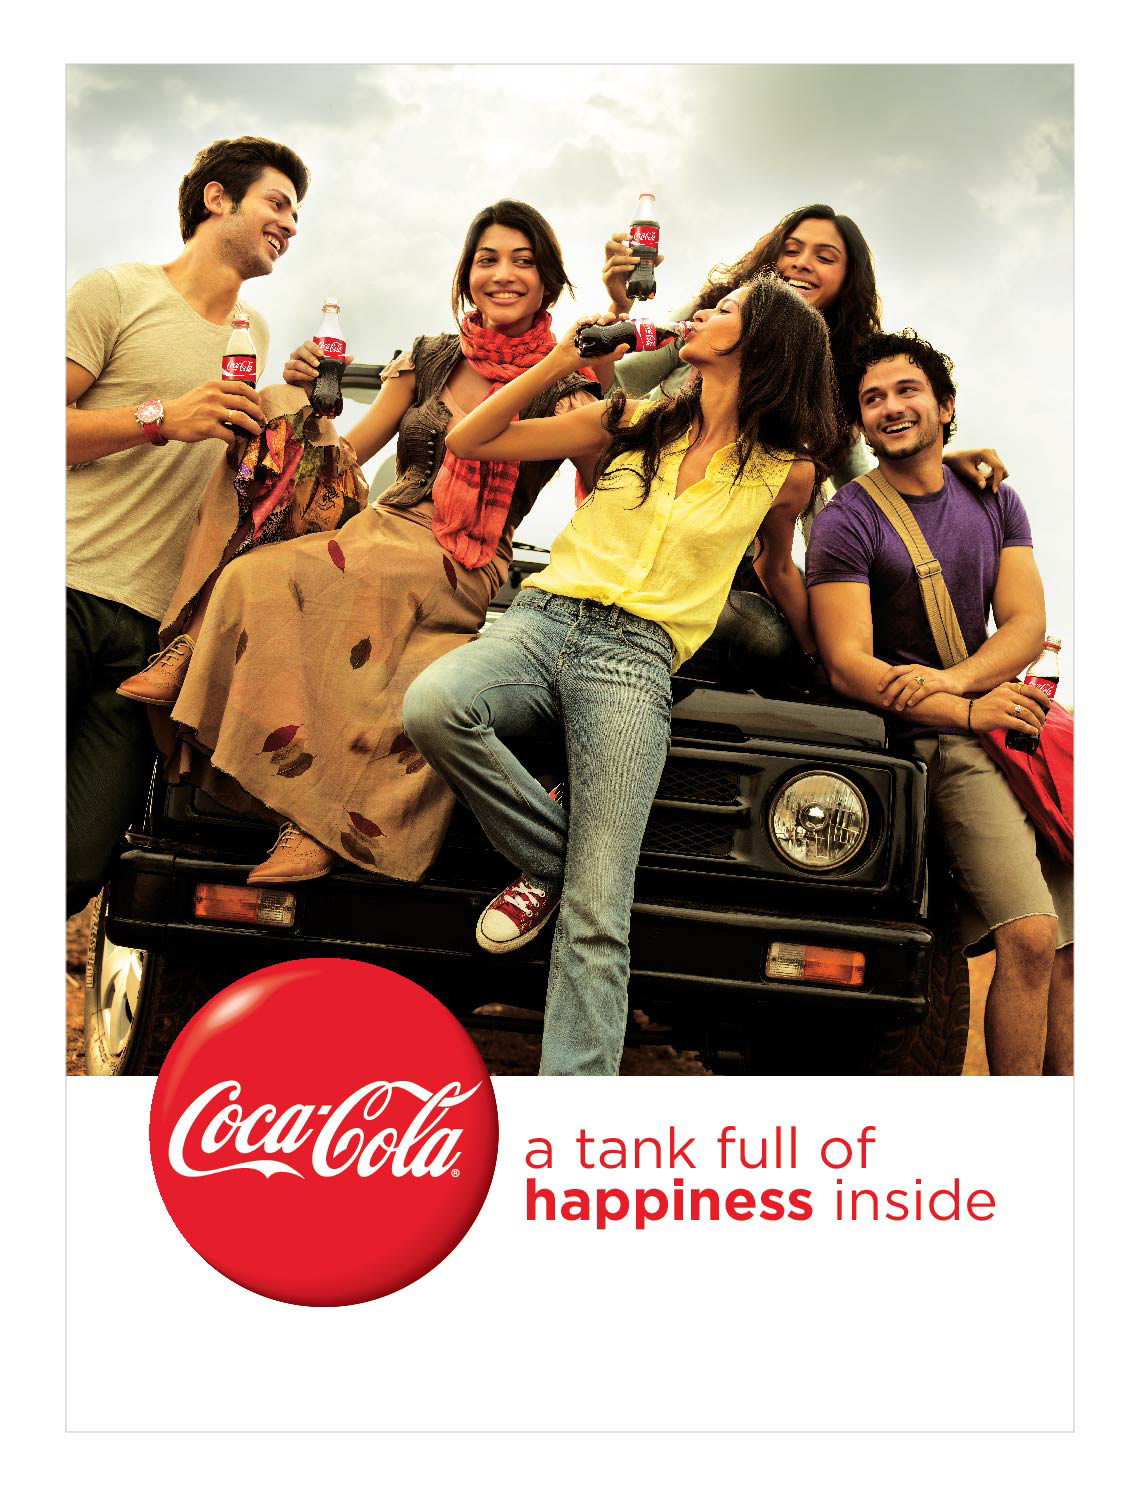 Coca Cola India